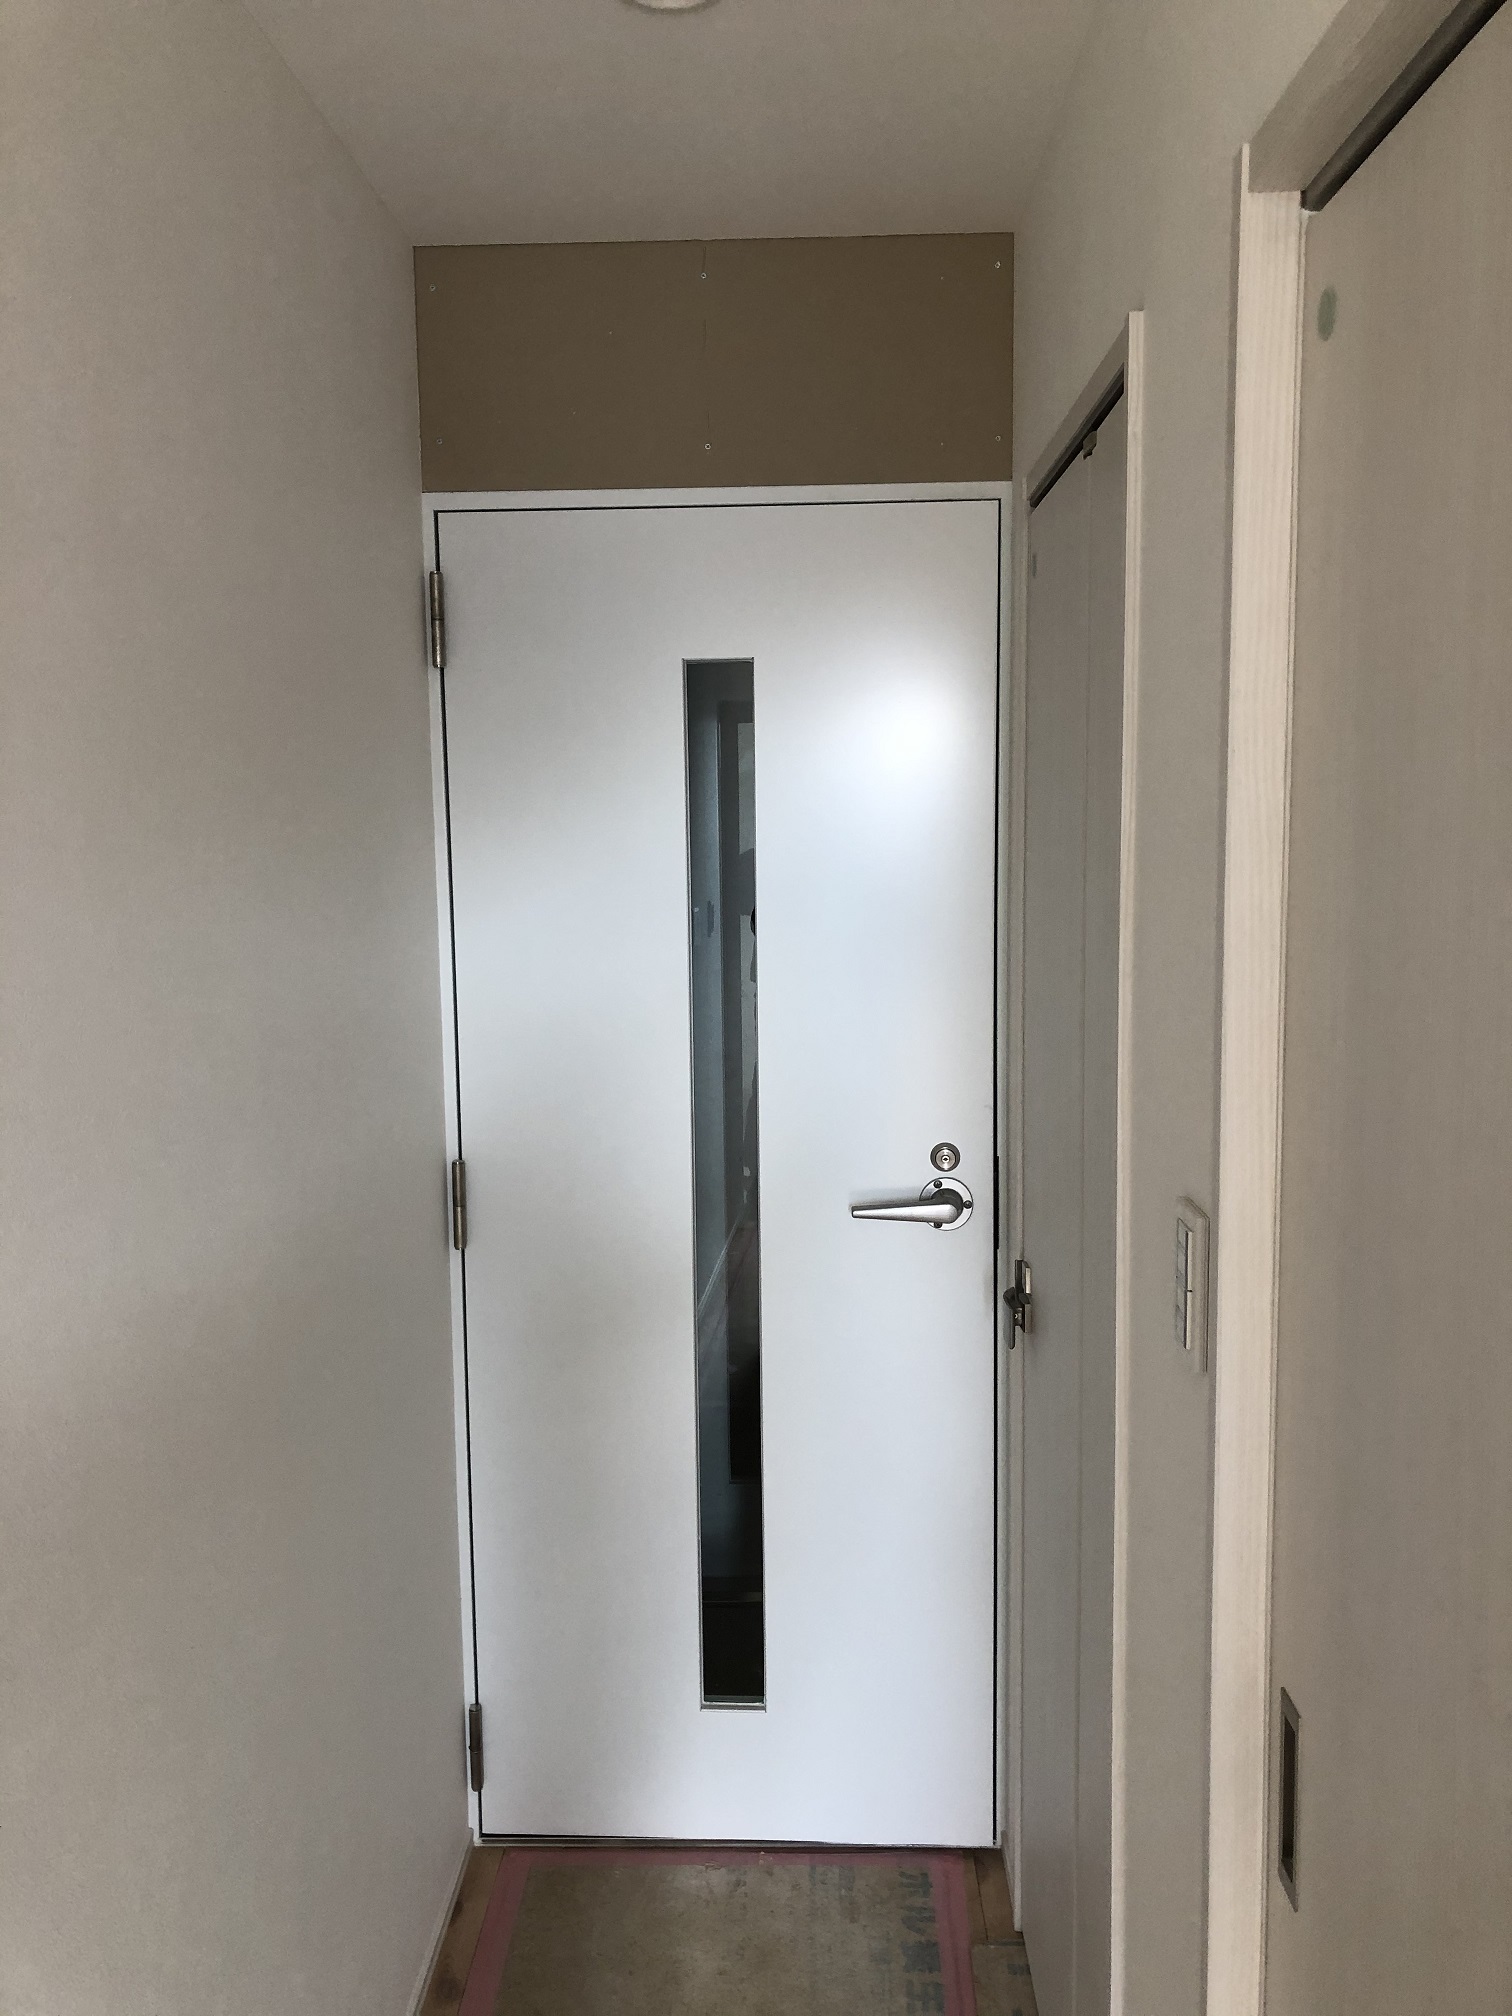 玄関から真っすぐの場所にKOTOBUKI製防音ドアで壁のクロスが白なので防音ドアも白にしてます。